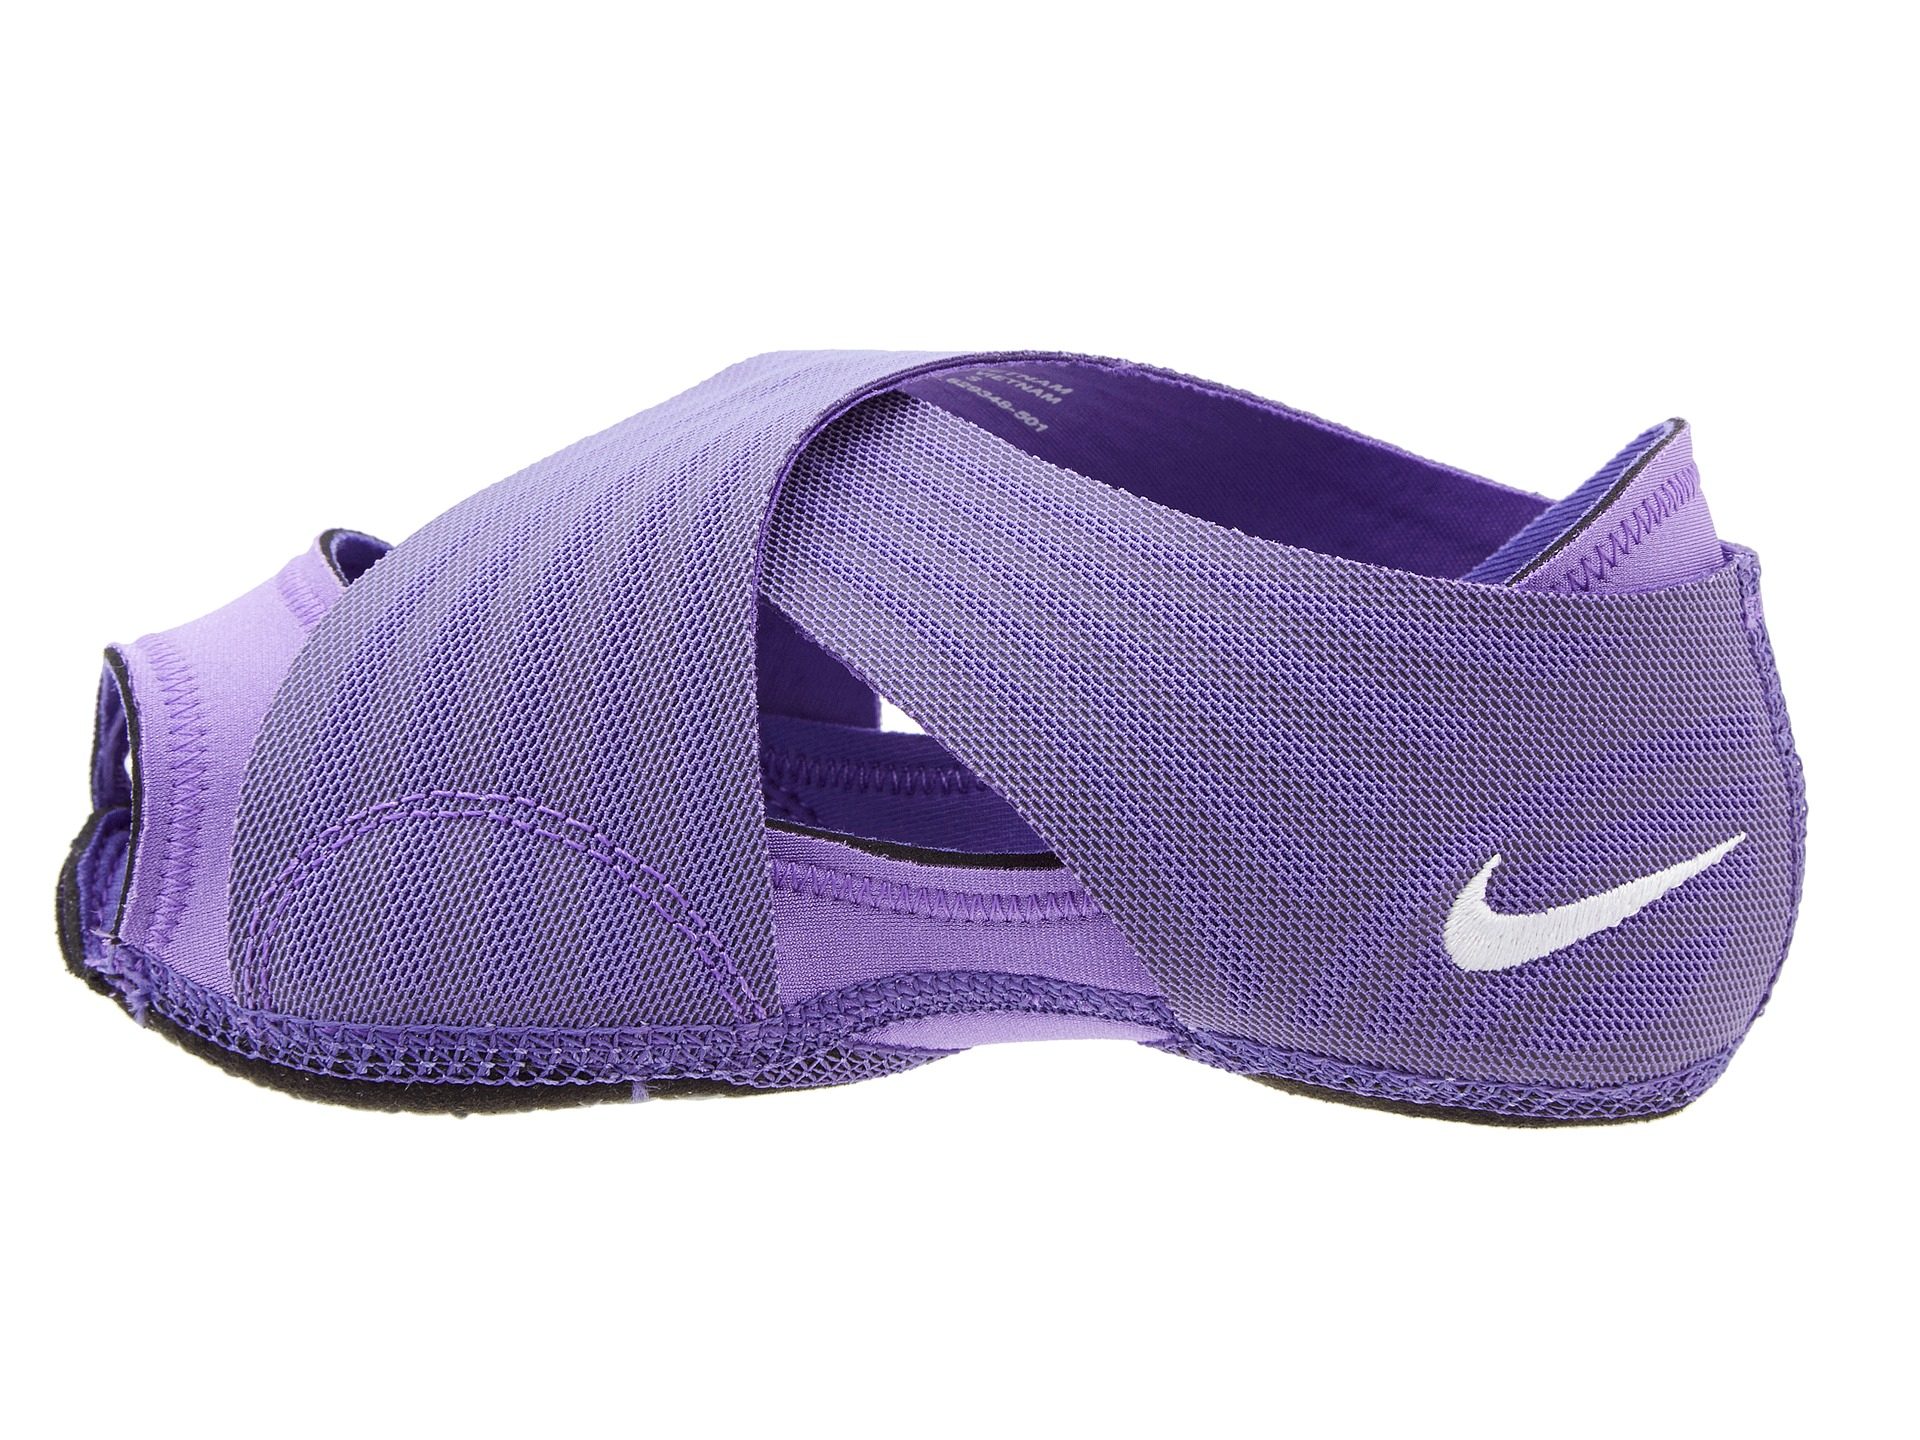 Nike Studio Wrap 2 in Purple Lyst